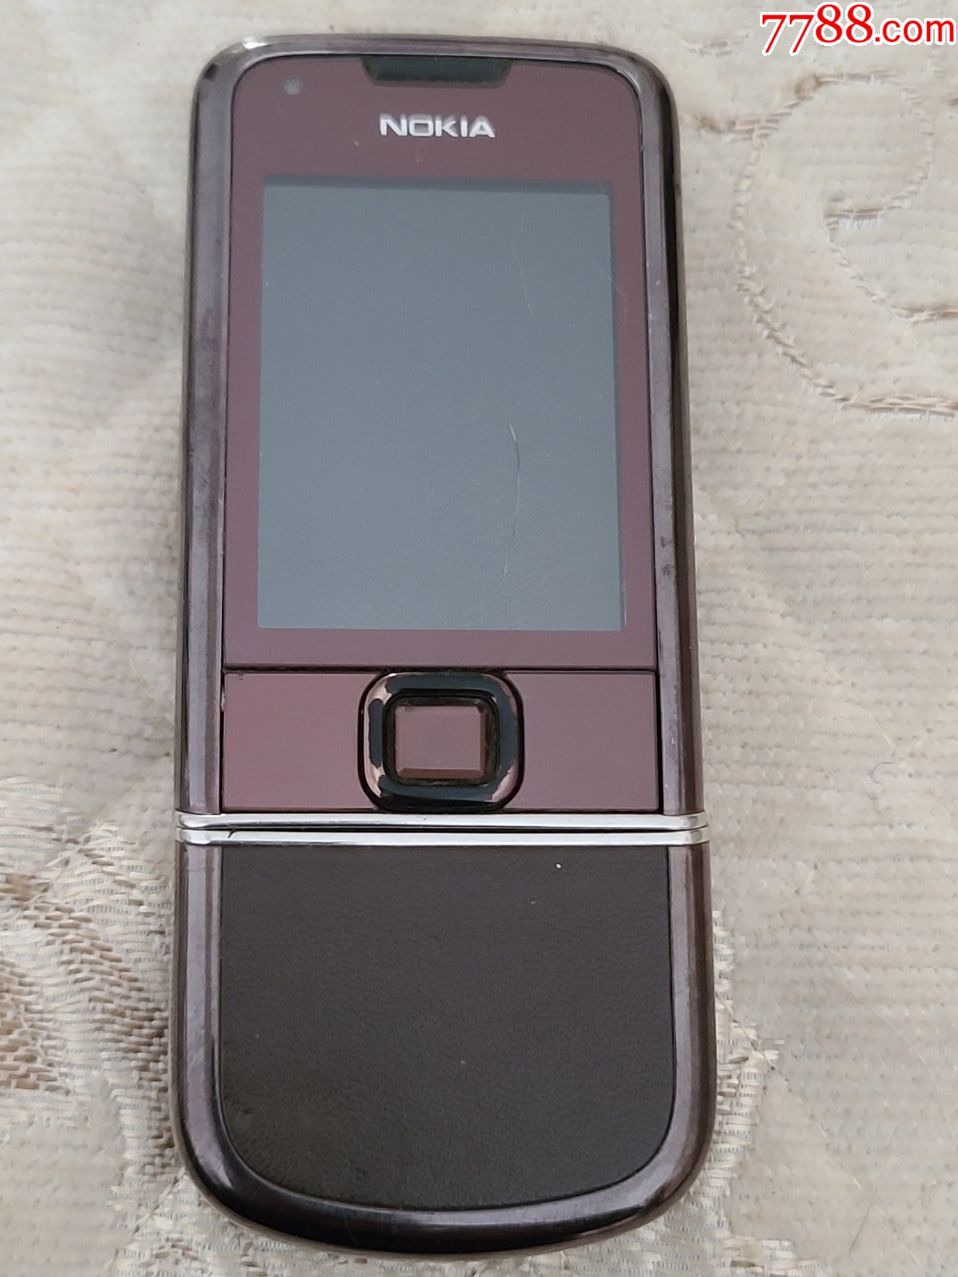 诺基亚8800e-1_其他手机_字体图片_收藏价格_7788印章